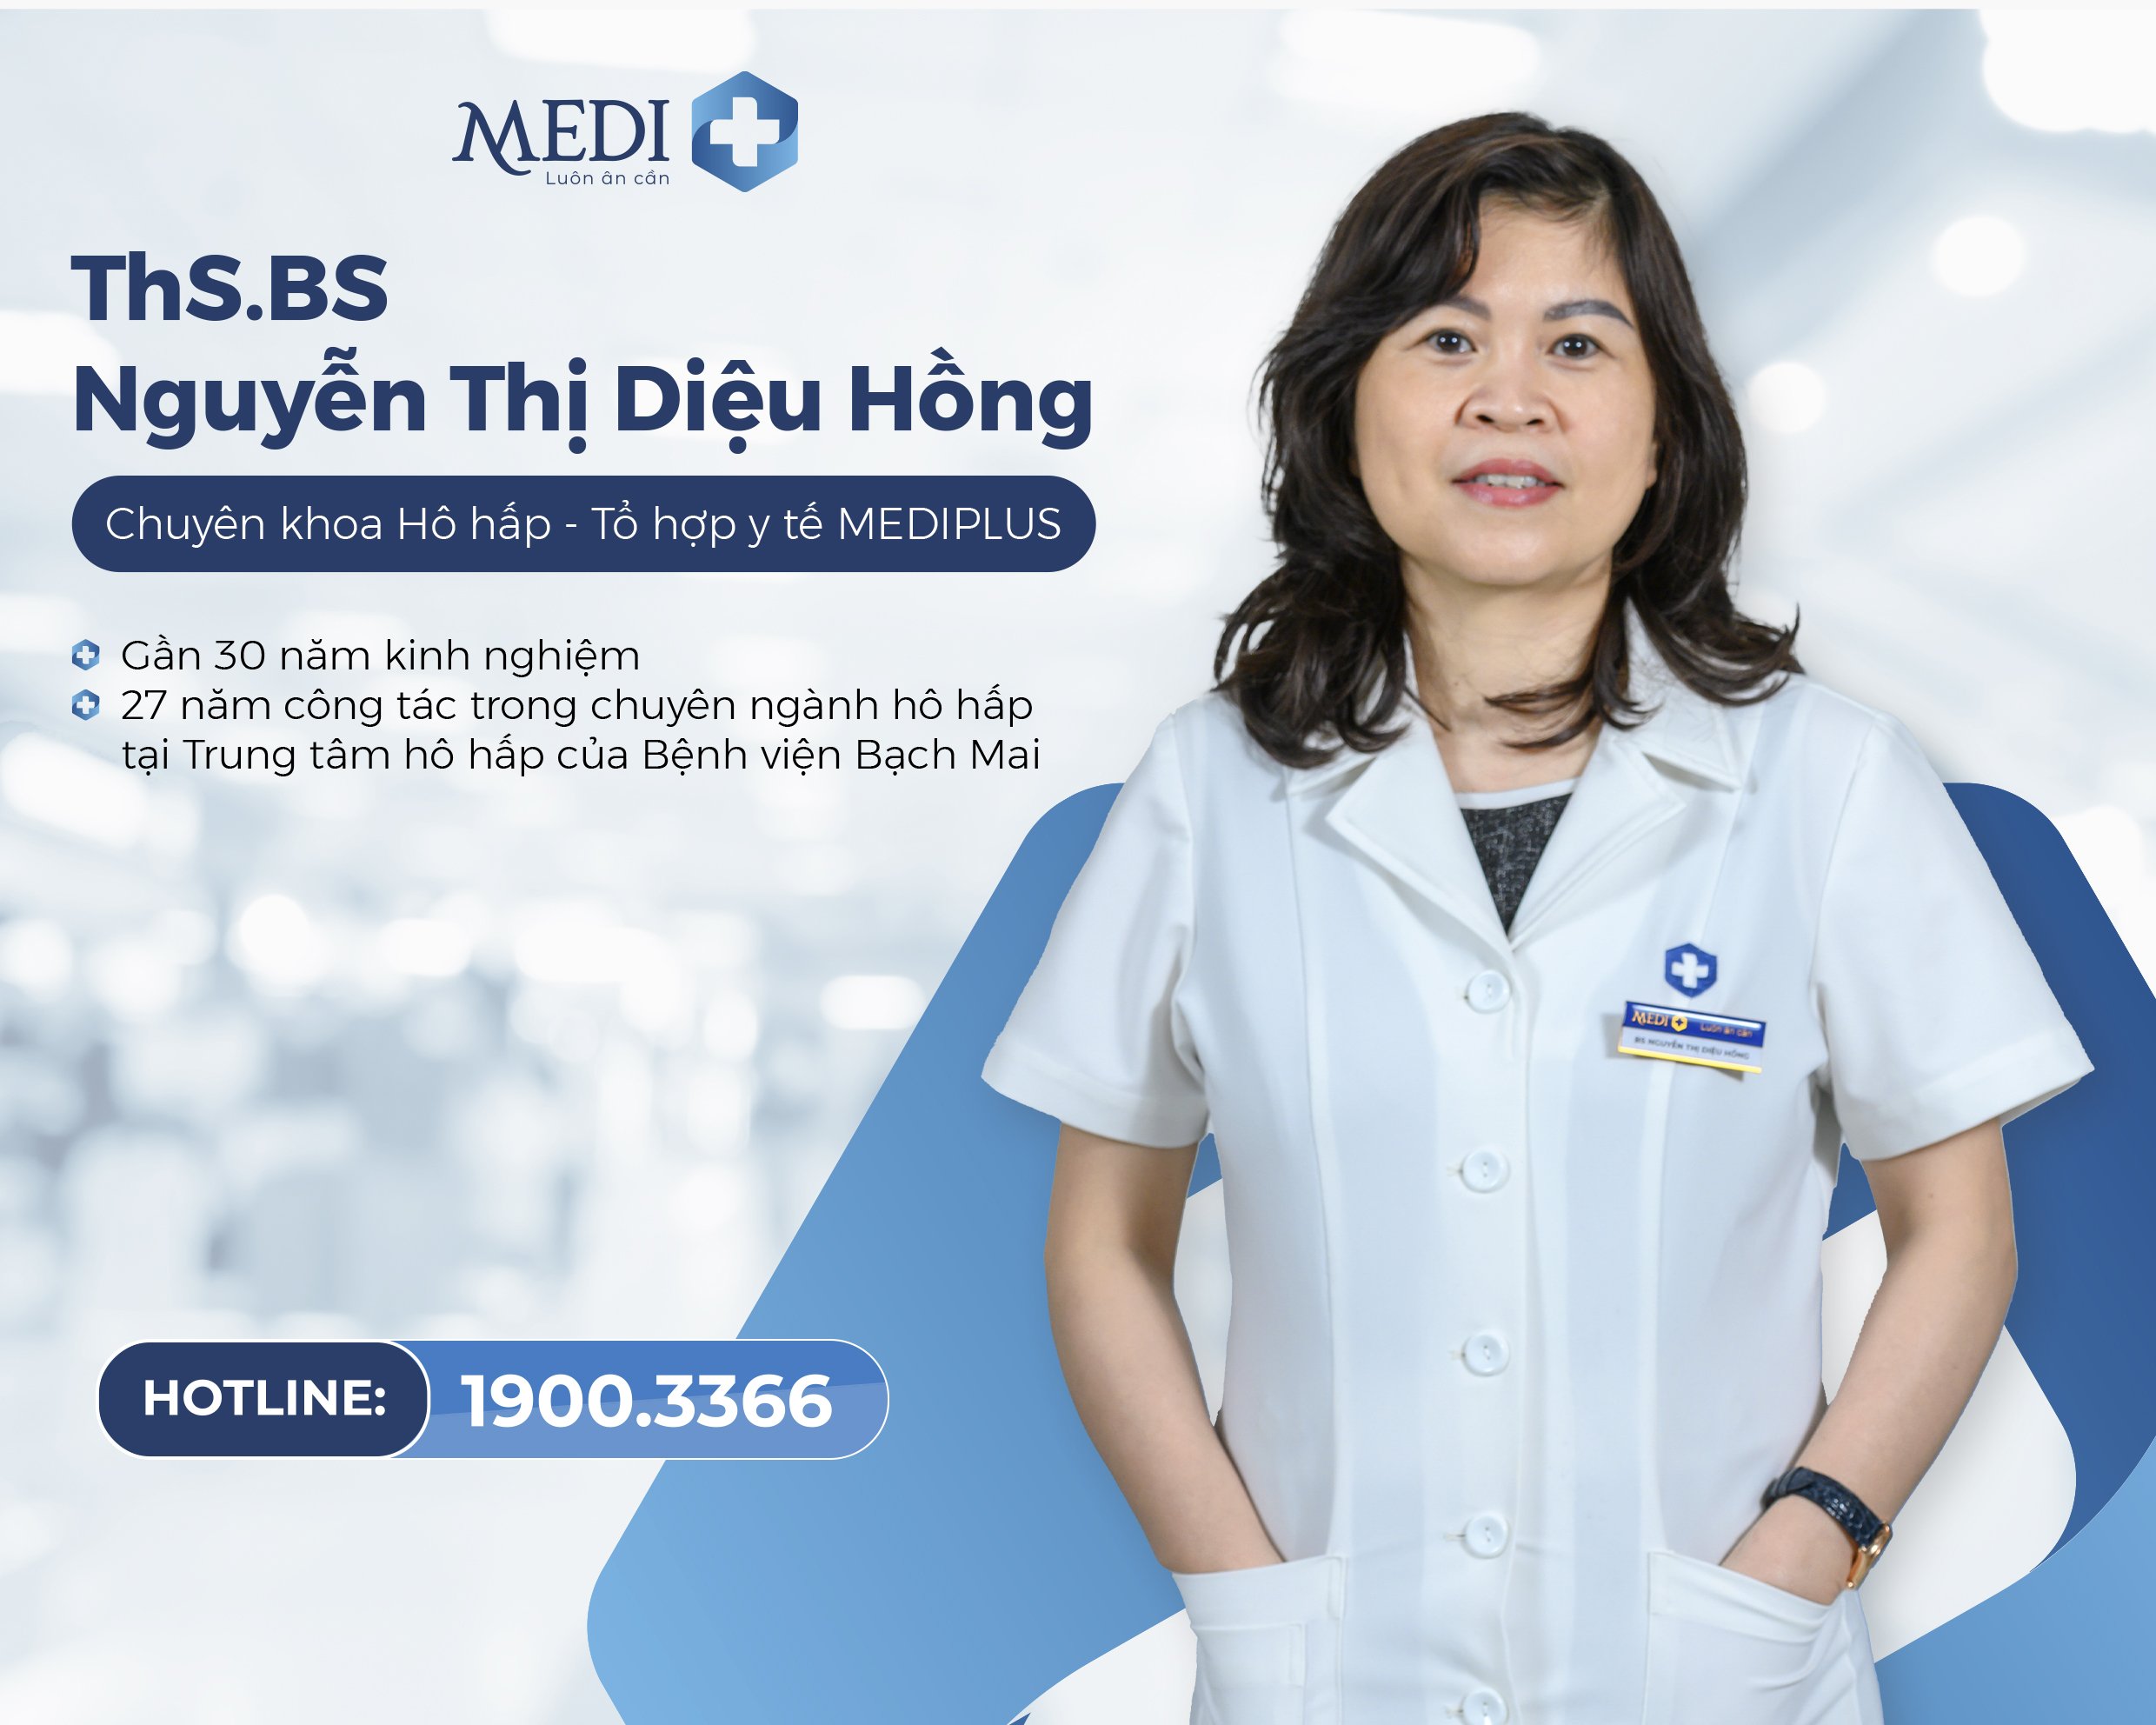 ThS.BS Nguyễn Thị Diệu Hồng - Nguyên bác sĩ Trung tâm hô hấp Bệnh viện Bạch Mai - Bác sĩ Nội hô hấp Tổ hợp y tế MEDIPLUS với gần 30 năm kinh nghiệm